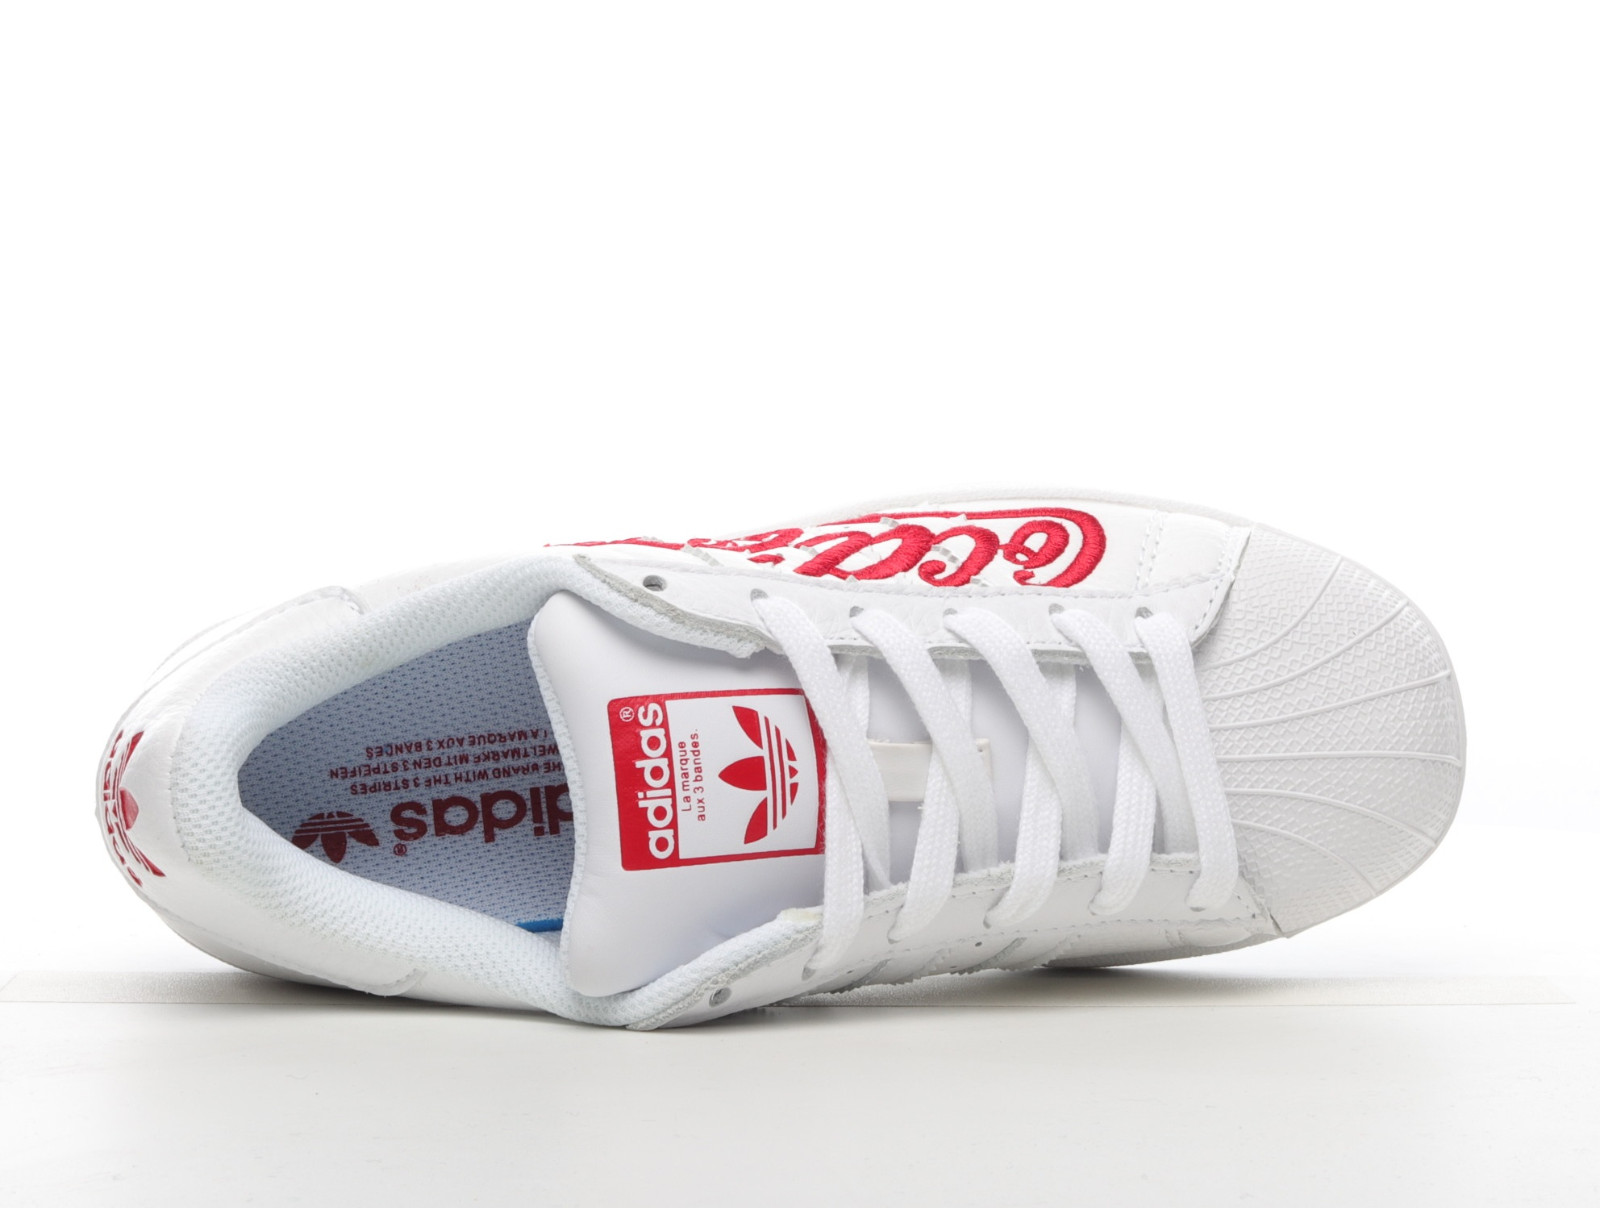 Sepsale - adidas trio joggers for sale - Adidas Originals Coca Cola Cloud White ZA6606